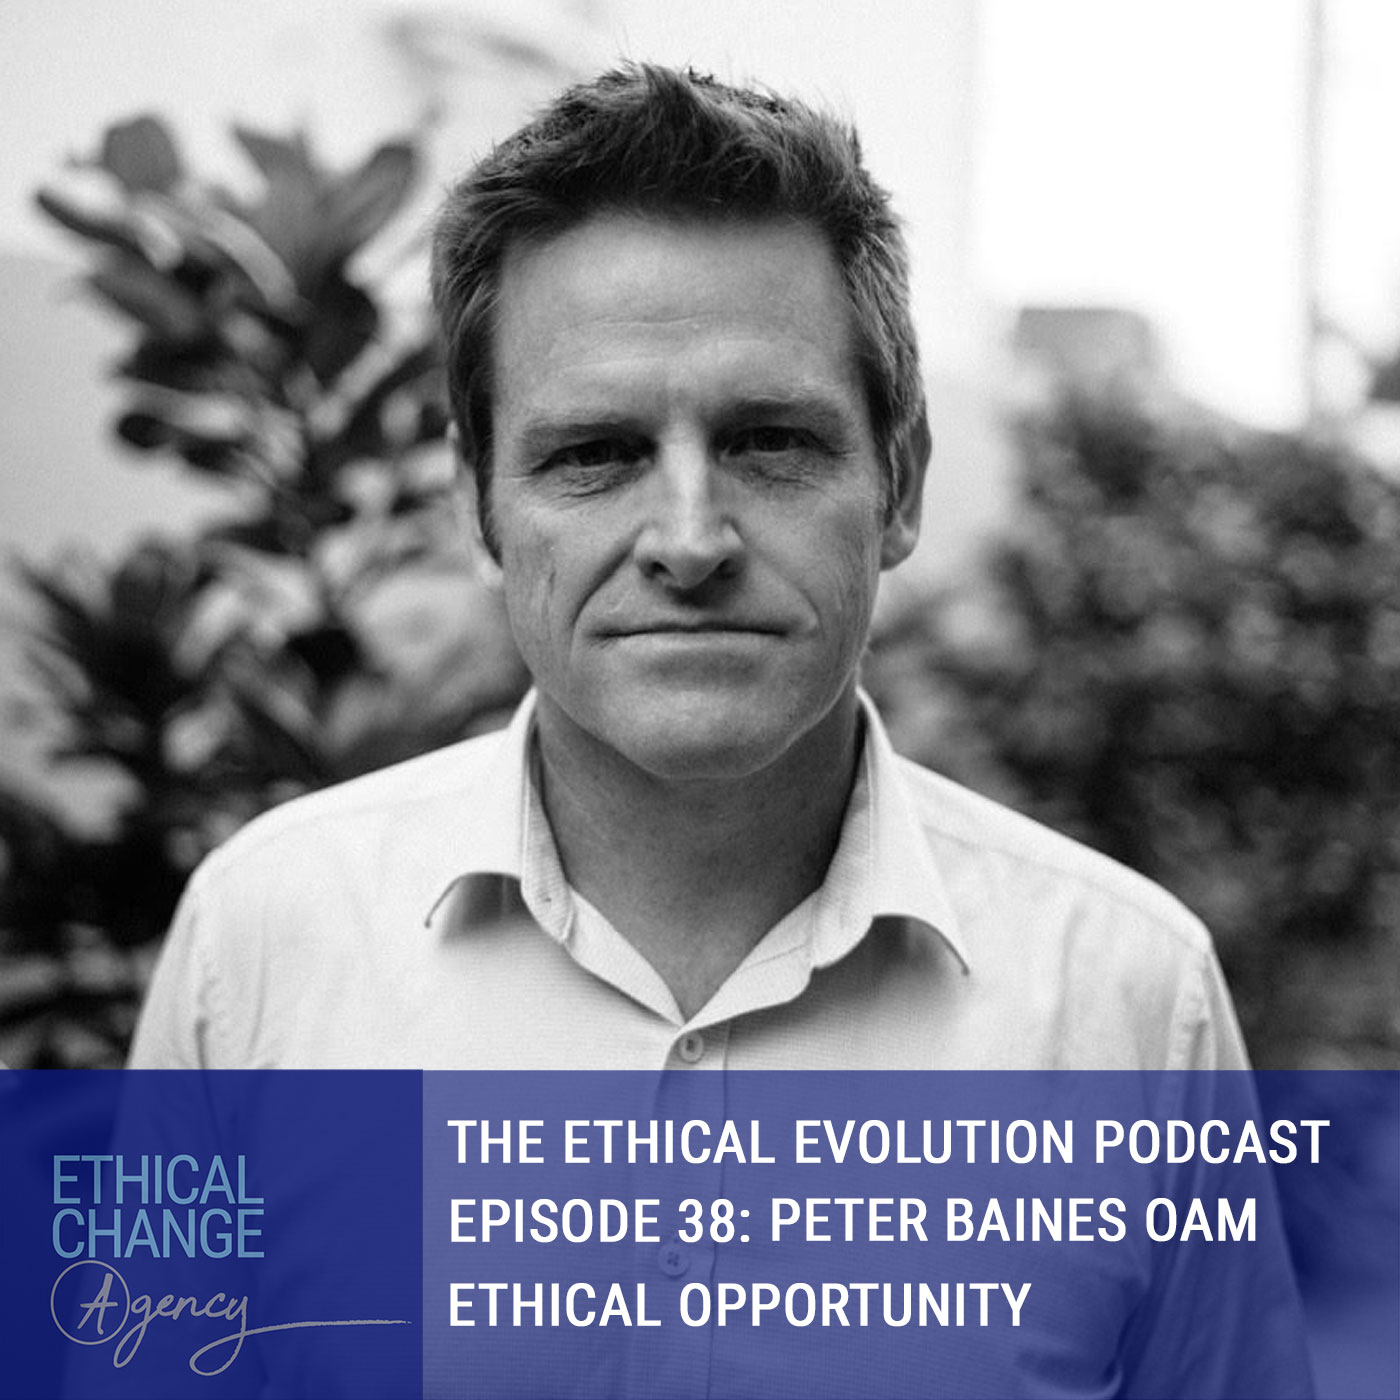 Artwork for podcast The Ethical Evolution Podcast